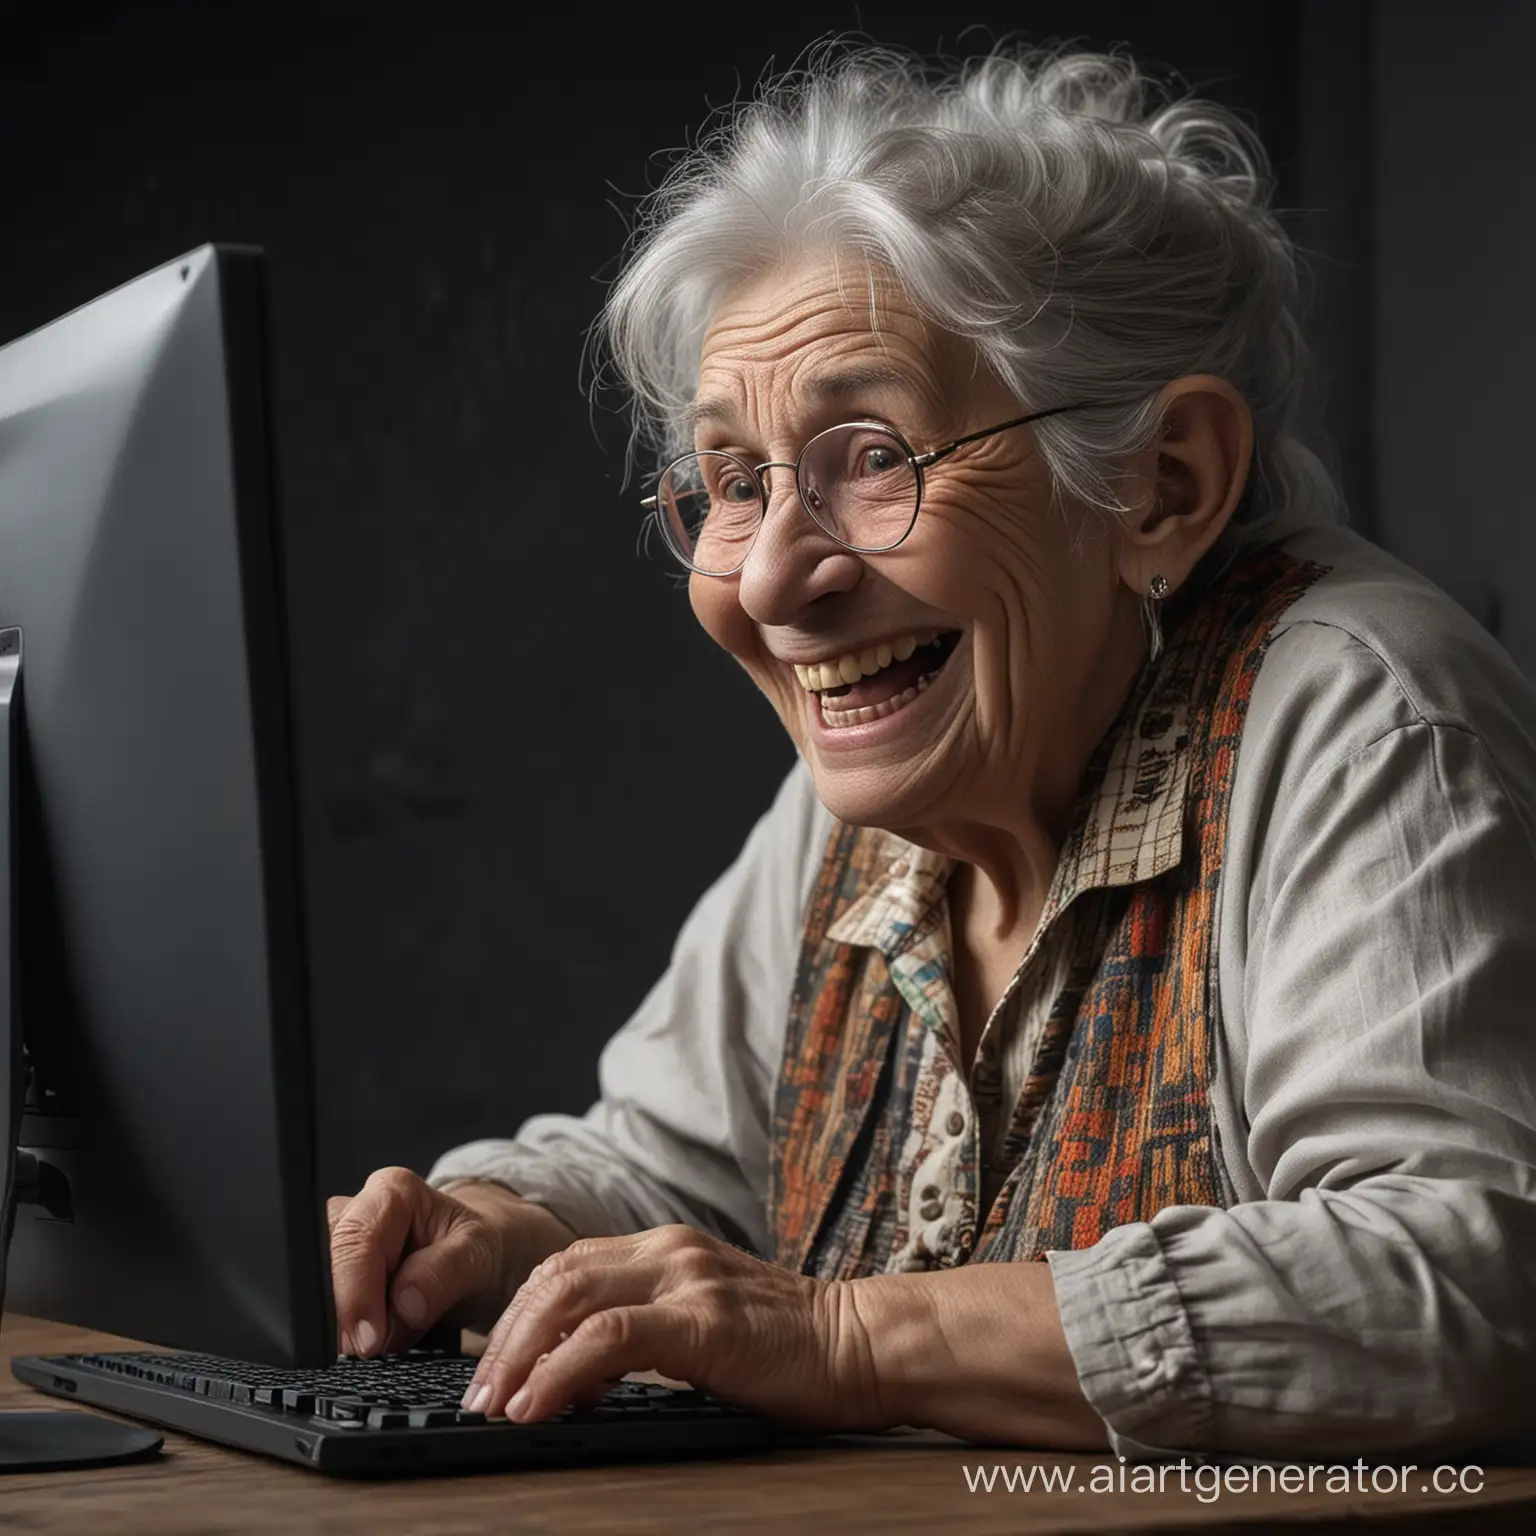 старая бабка тролль сидит за компьютером, издевается над людьми на форуме и злобно смеется. компьтер виден полностью, вокруг темный свет